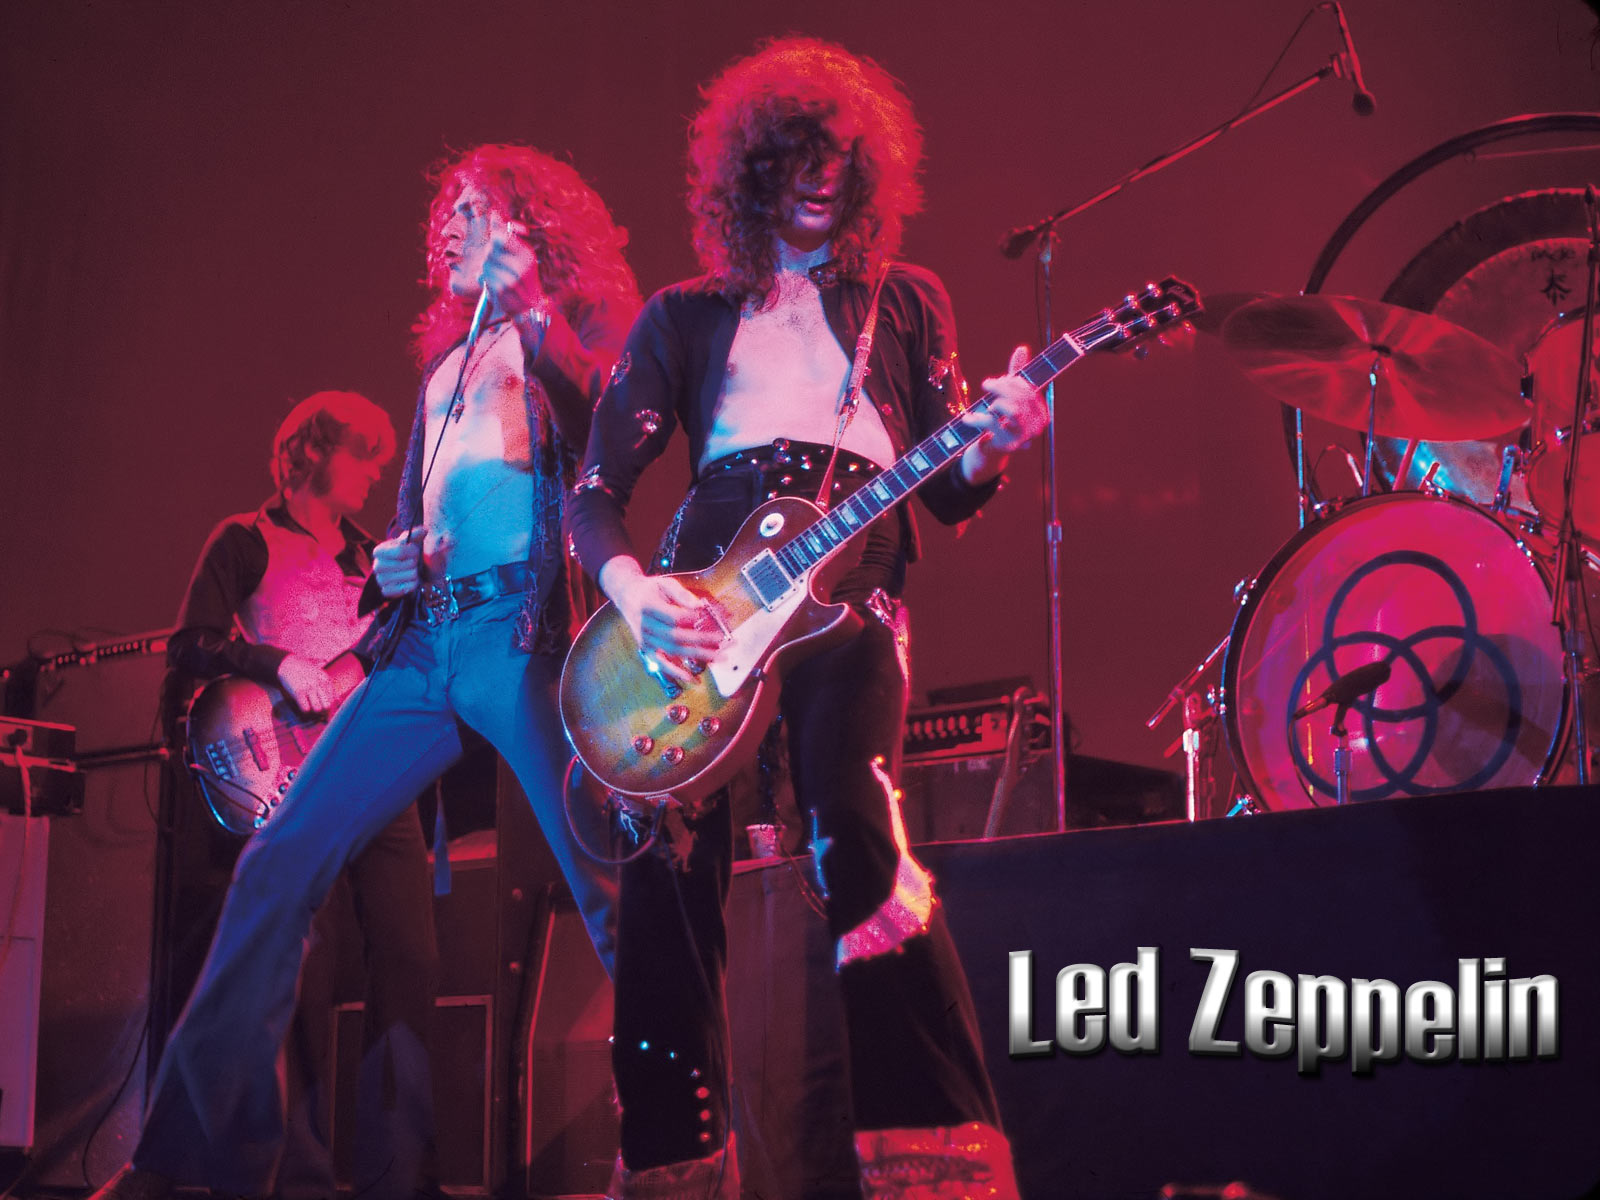 Best Led Zeppelin Photo | Wallpaperholic